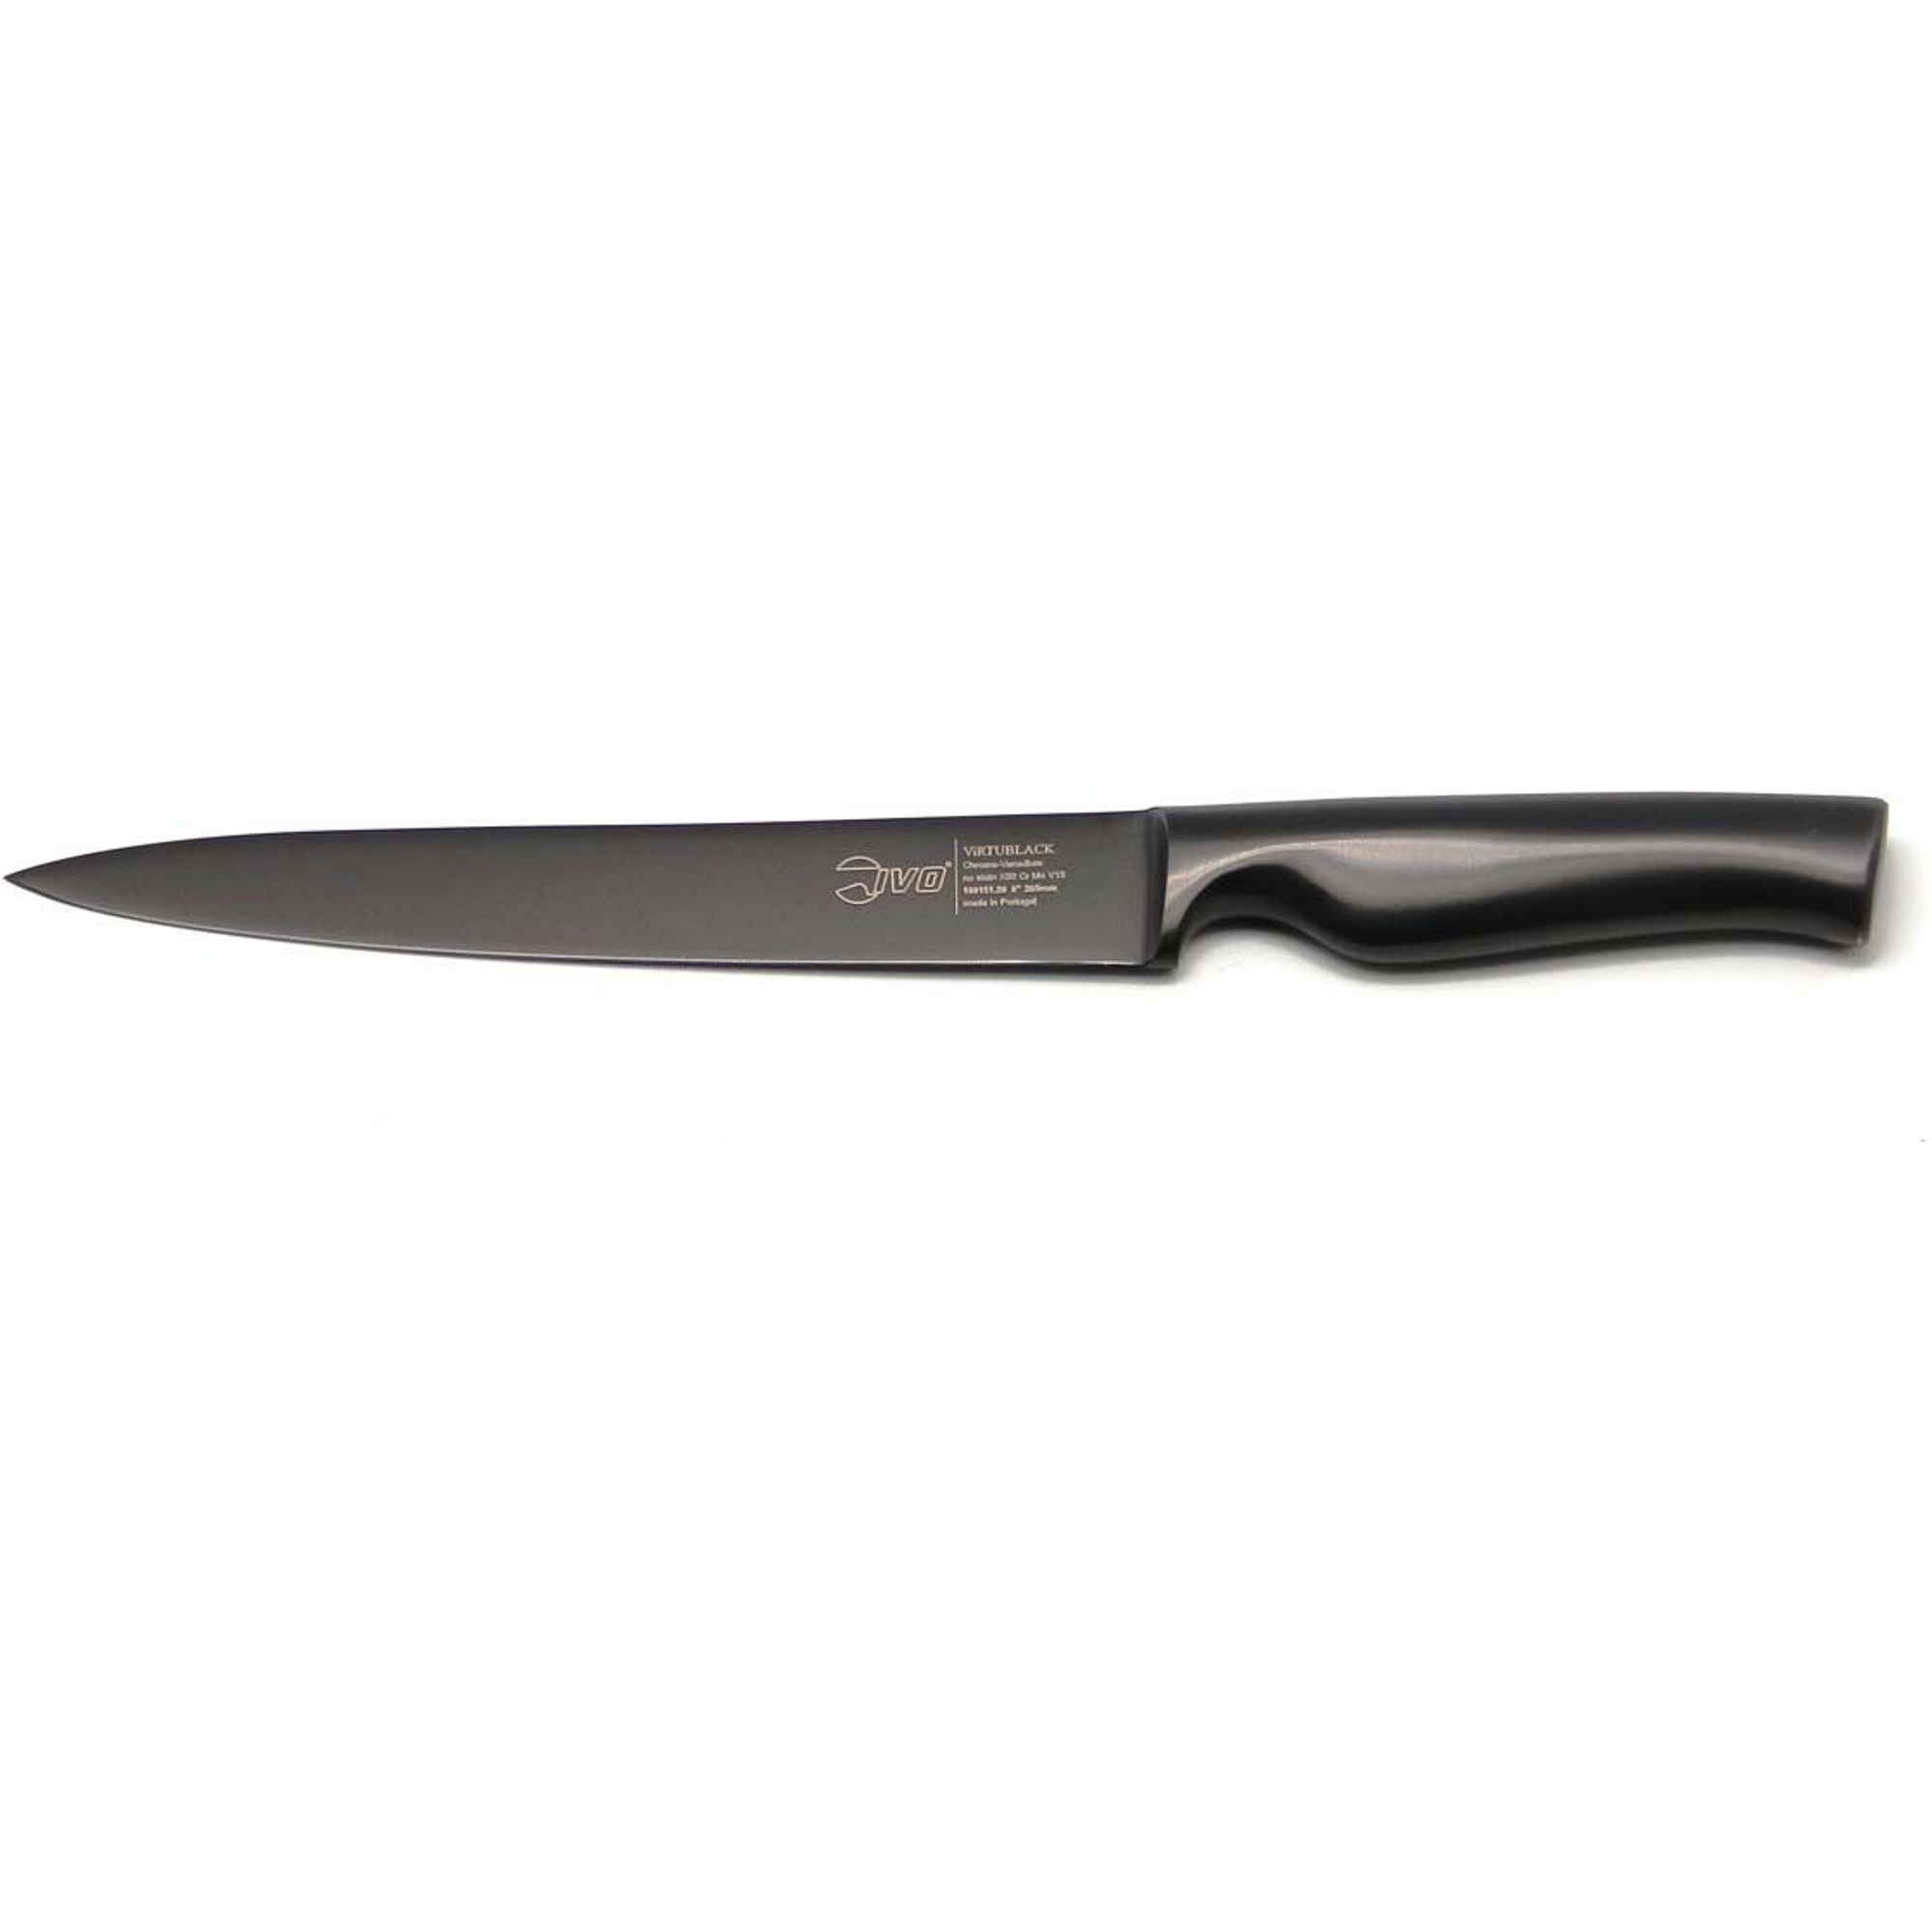 Нож разделочный 20см virtu black Ivo нож для хлеба 20см virtu   ivo